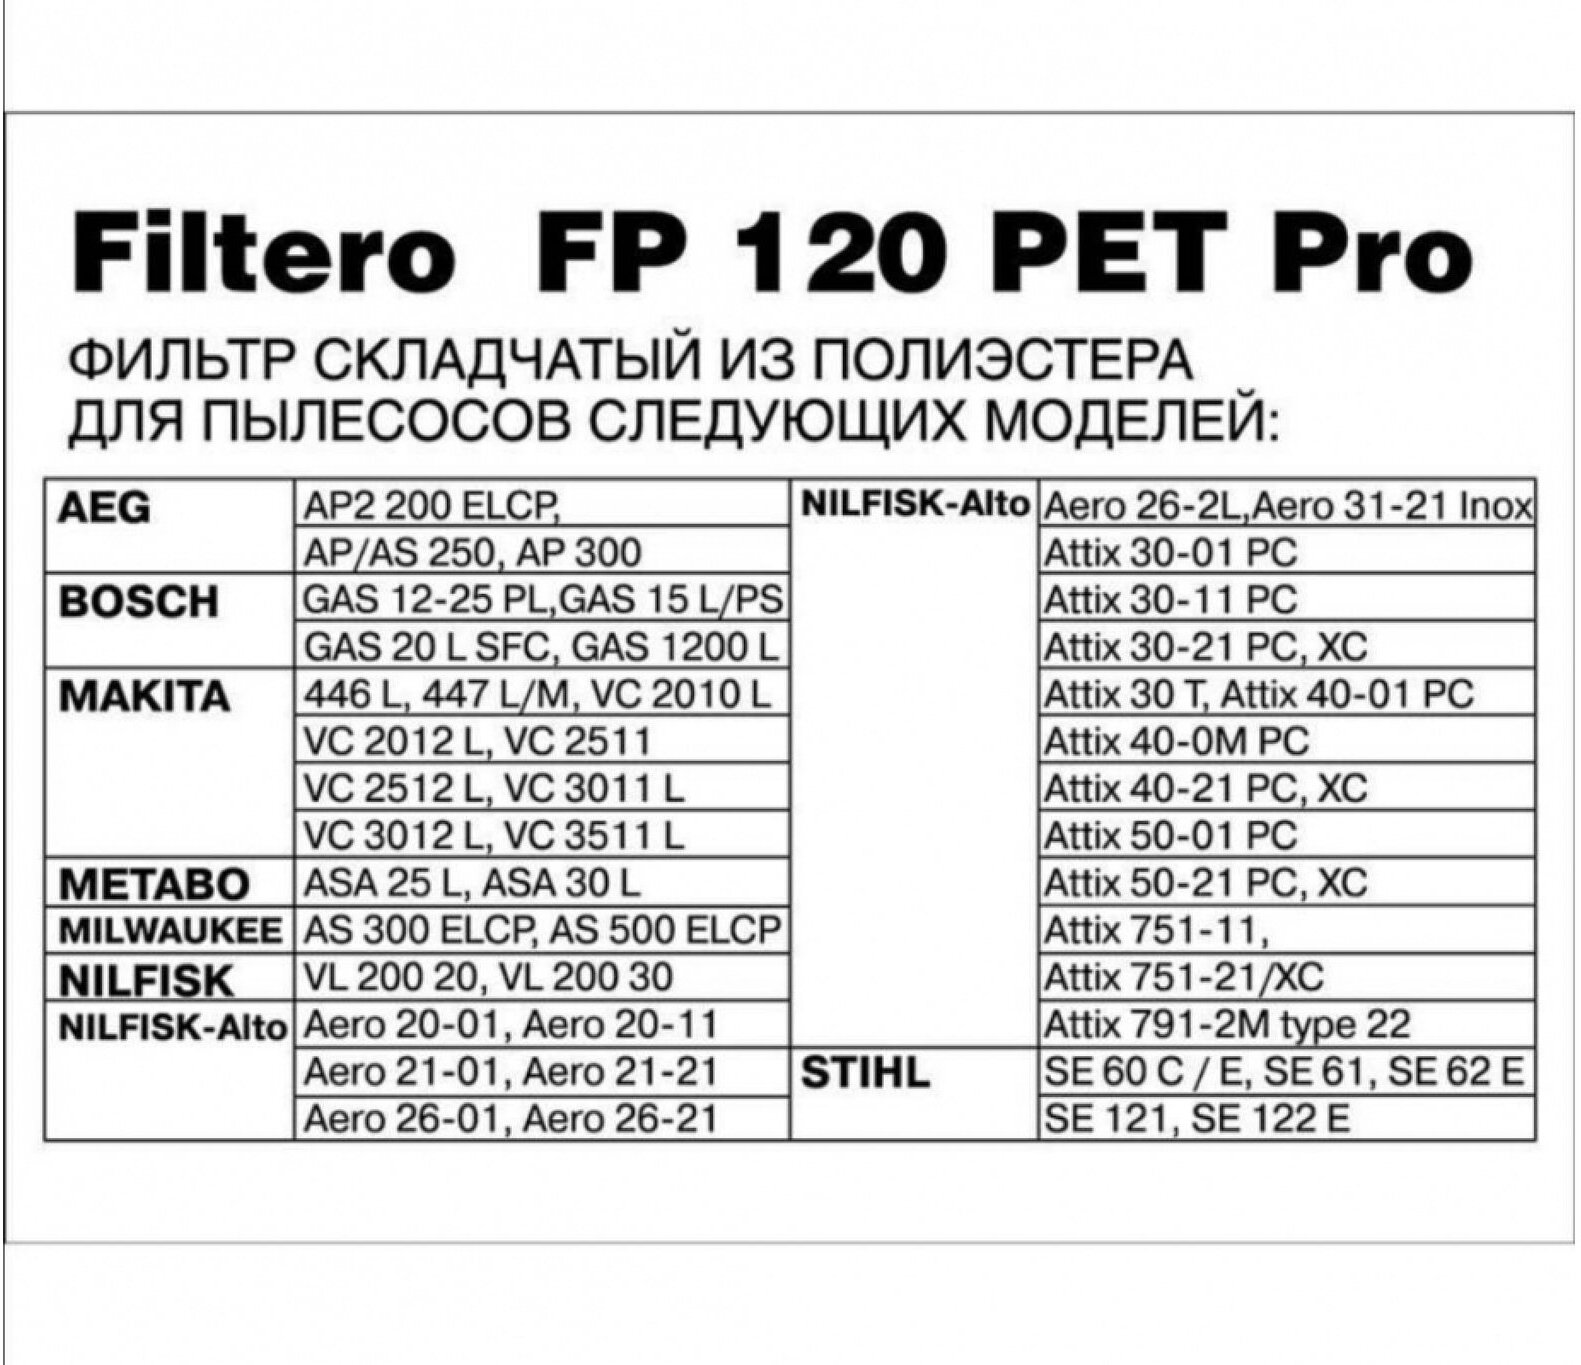 Фильтр складчатый FP 120 PET Pro для пылесосов BOSCH, MAKITA, METABO, NILFISK, STIHL Filtero 05793 - фотография № 3